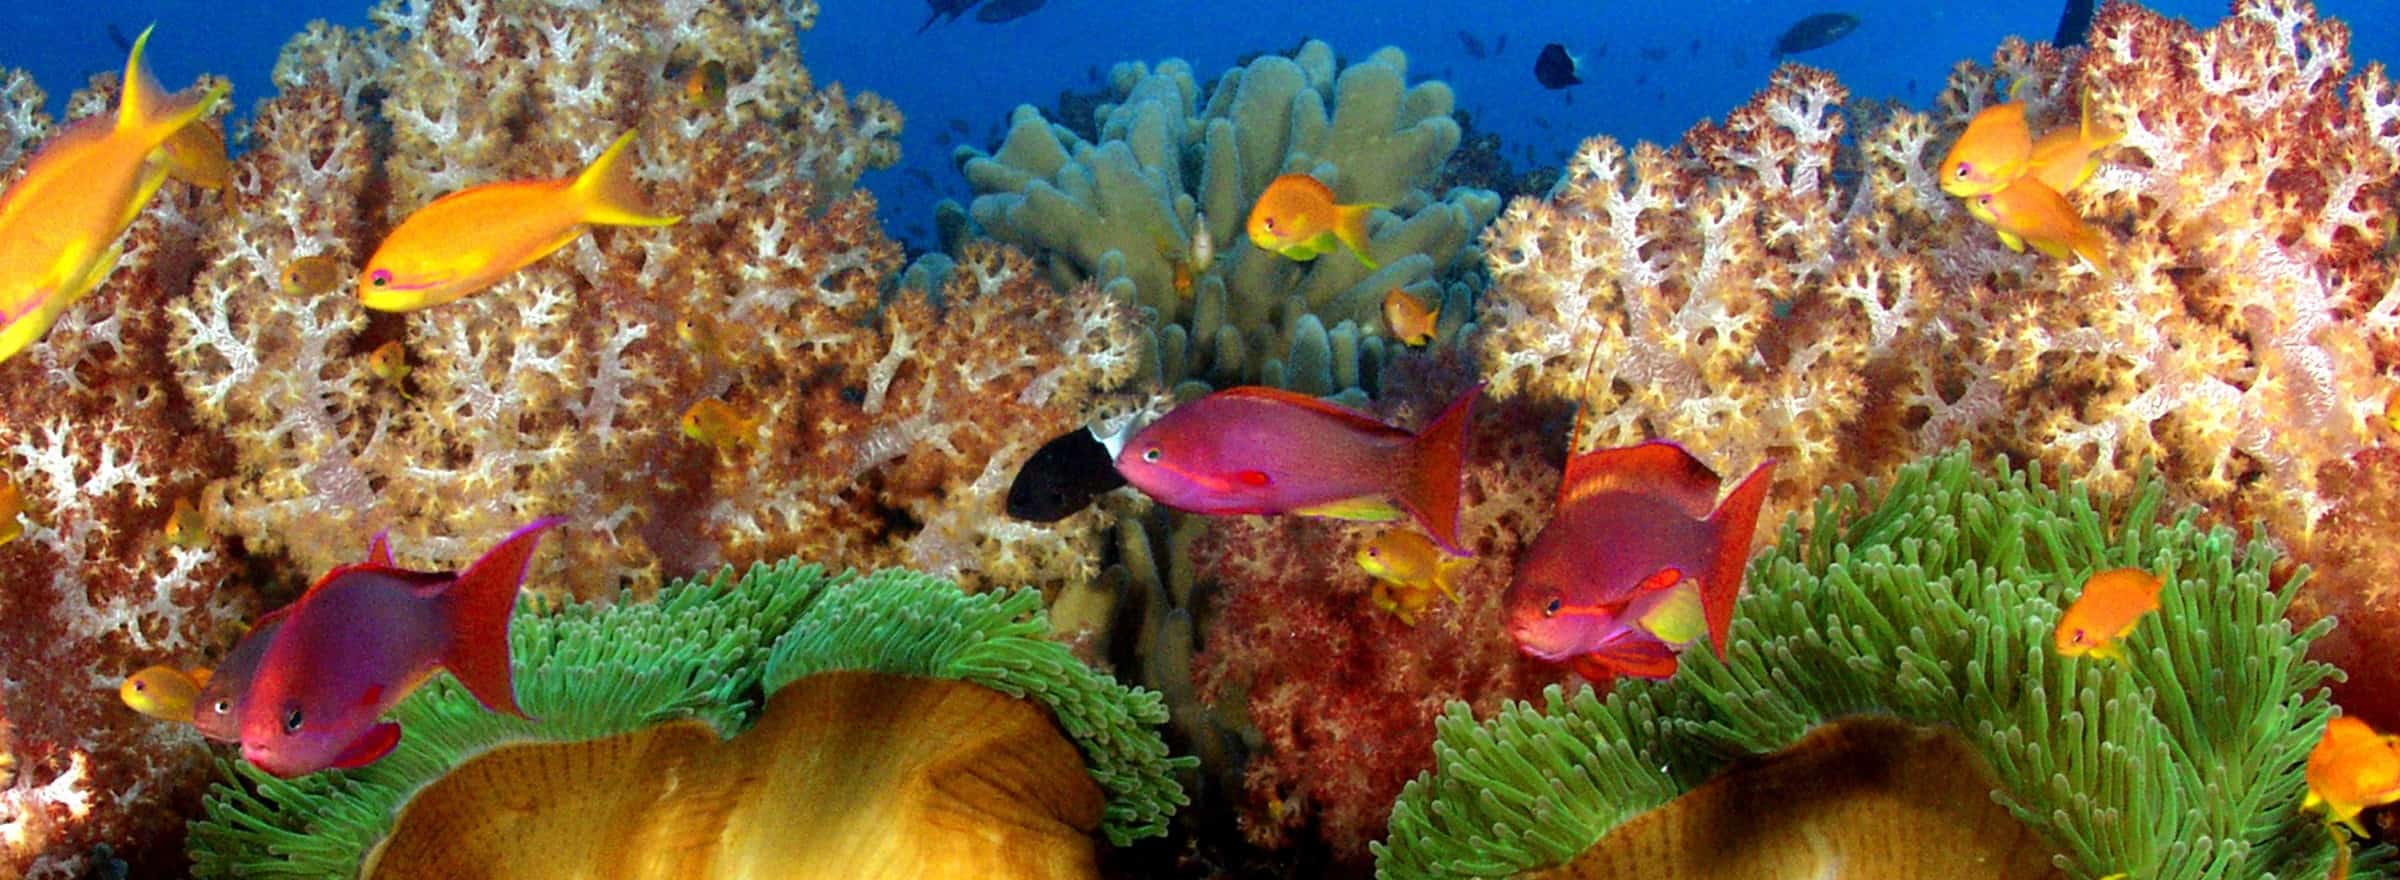 5 best Fiji dive spots